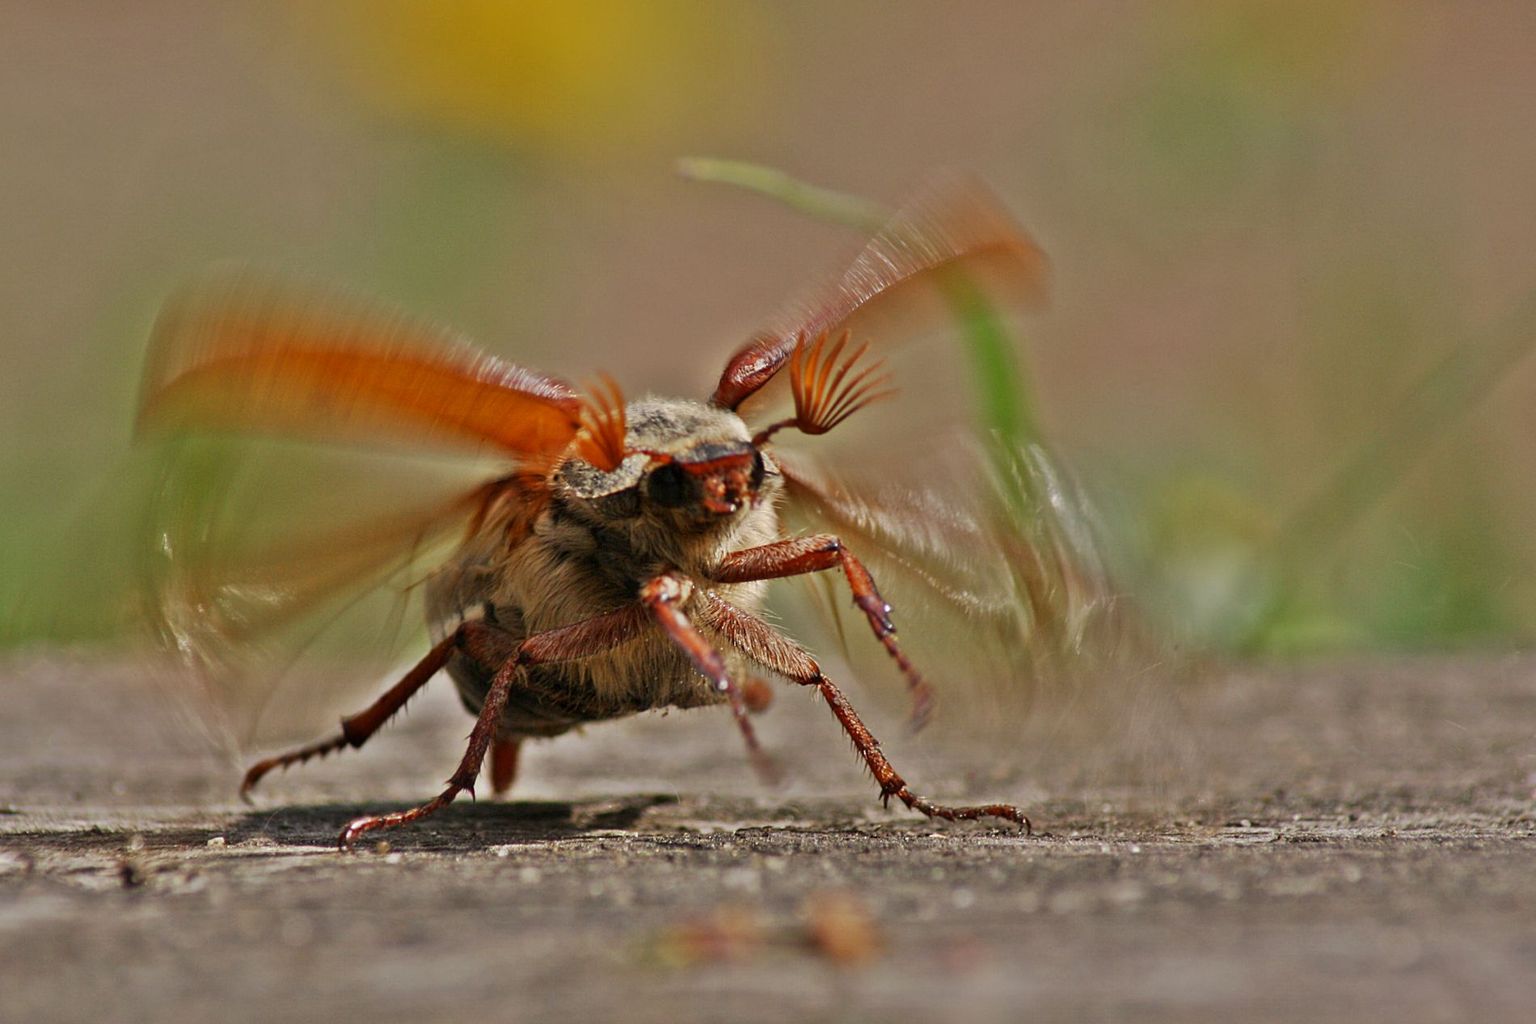 Maybug taking off